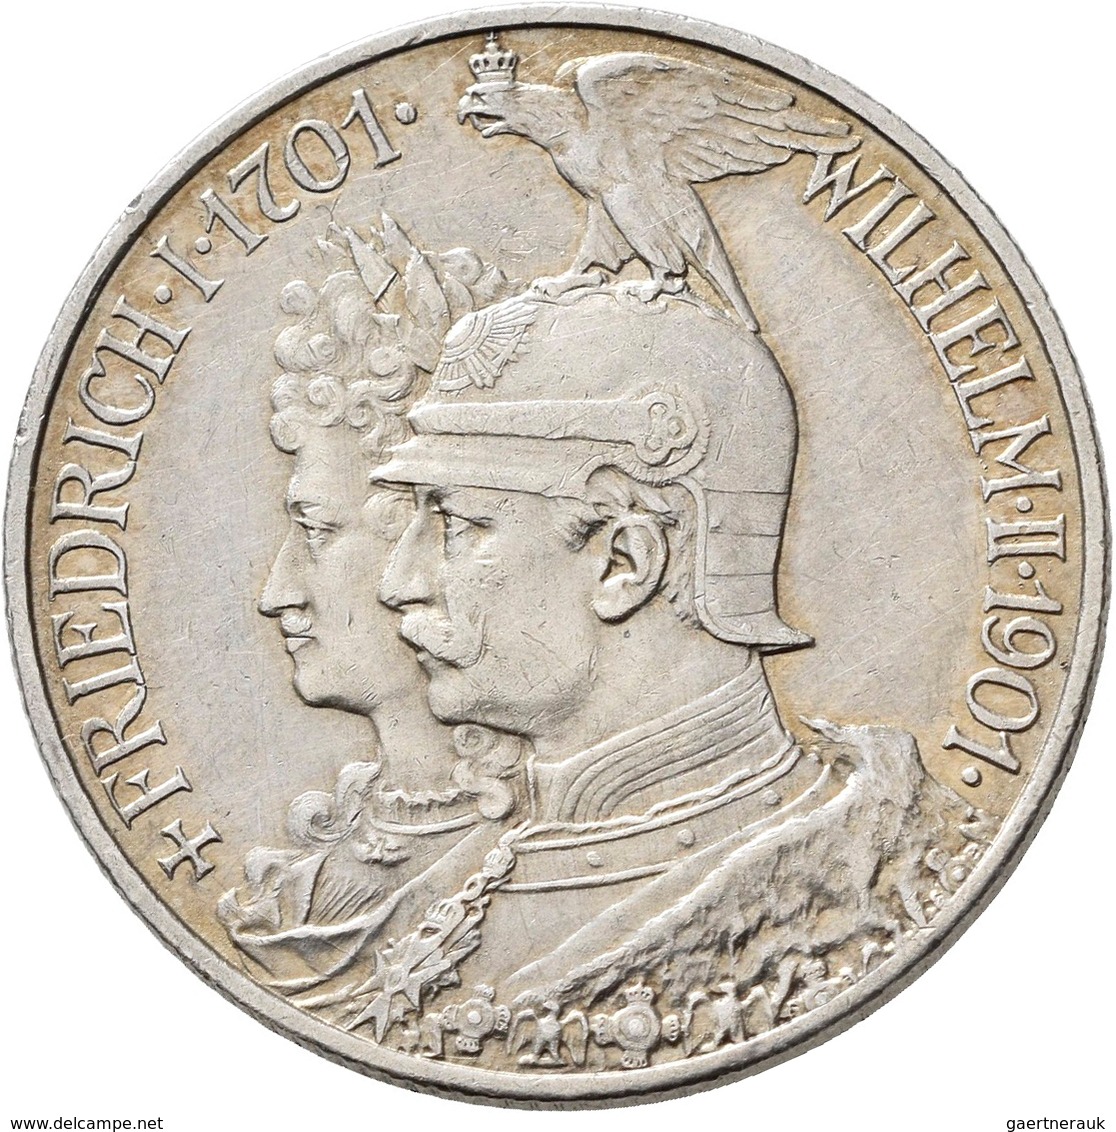 Umlaufmünzen 2 Mark bis 5 Mark: Preussen: Lot 7 Stück; 5 + 3 Mark 1901 (200 Jahrfeier); 3 + 2 Mark 1